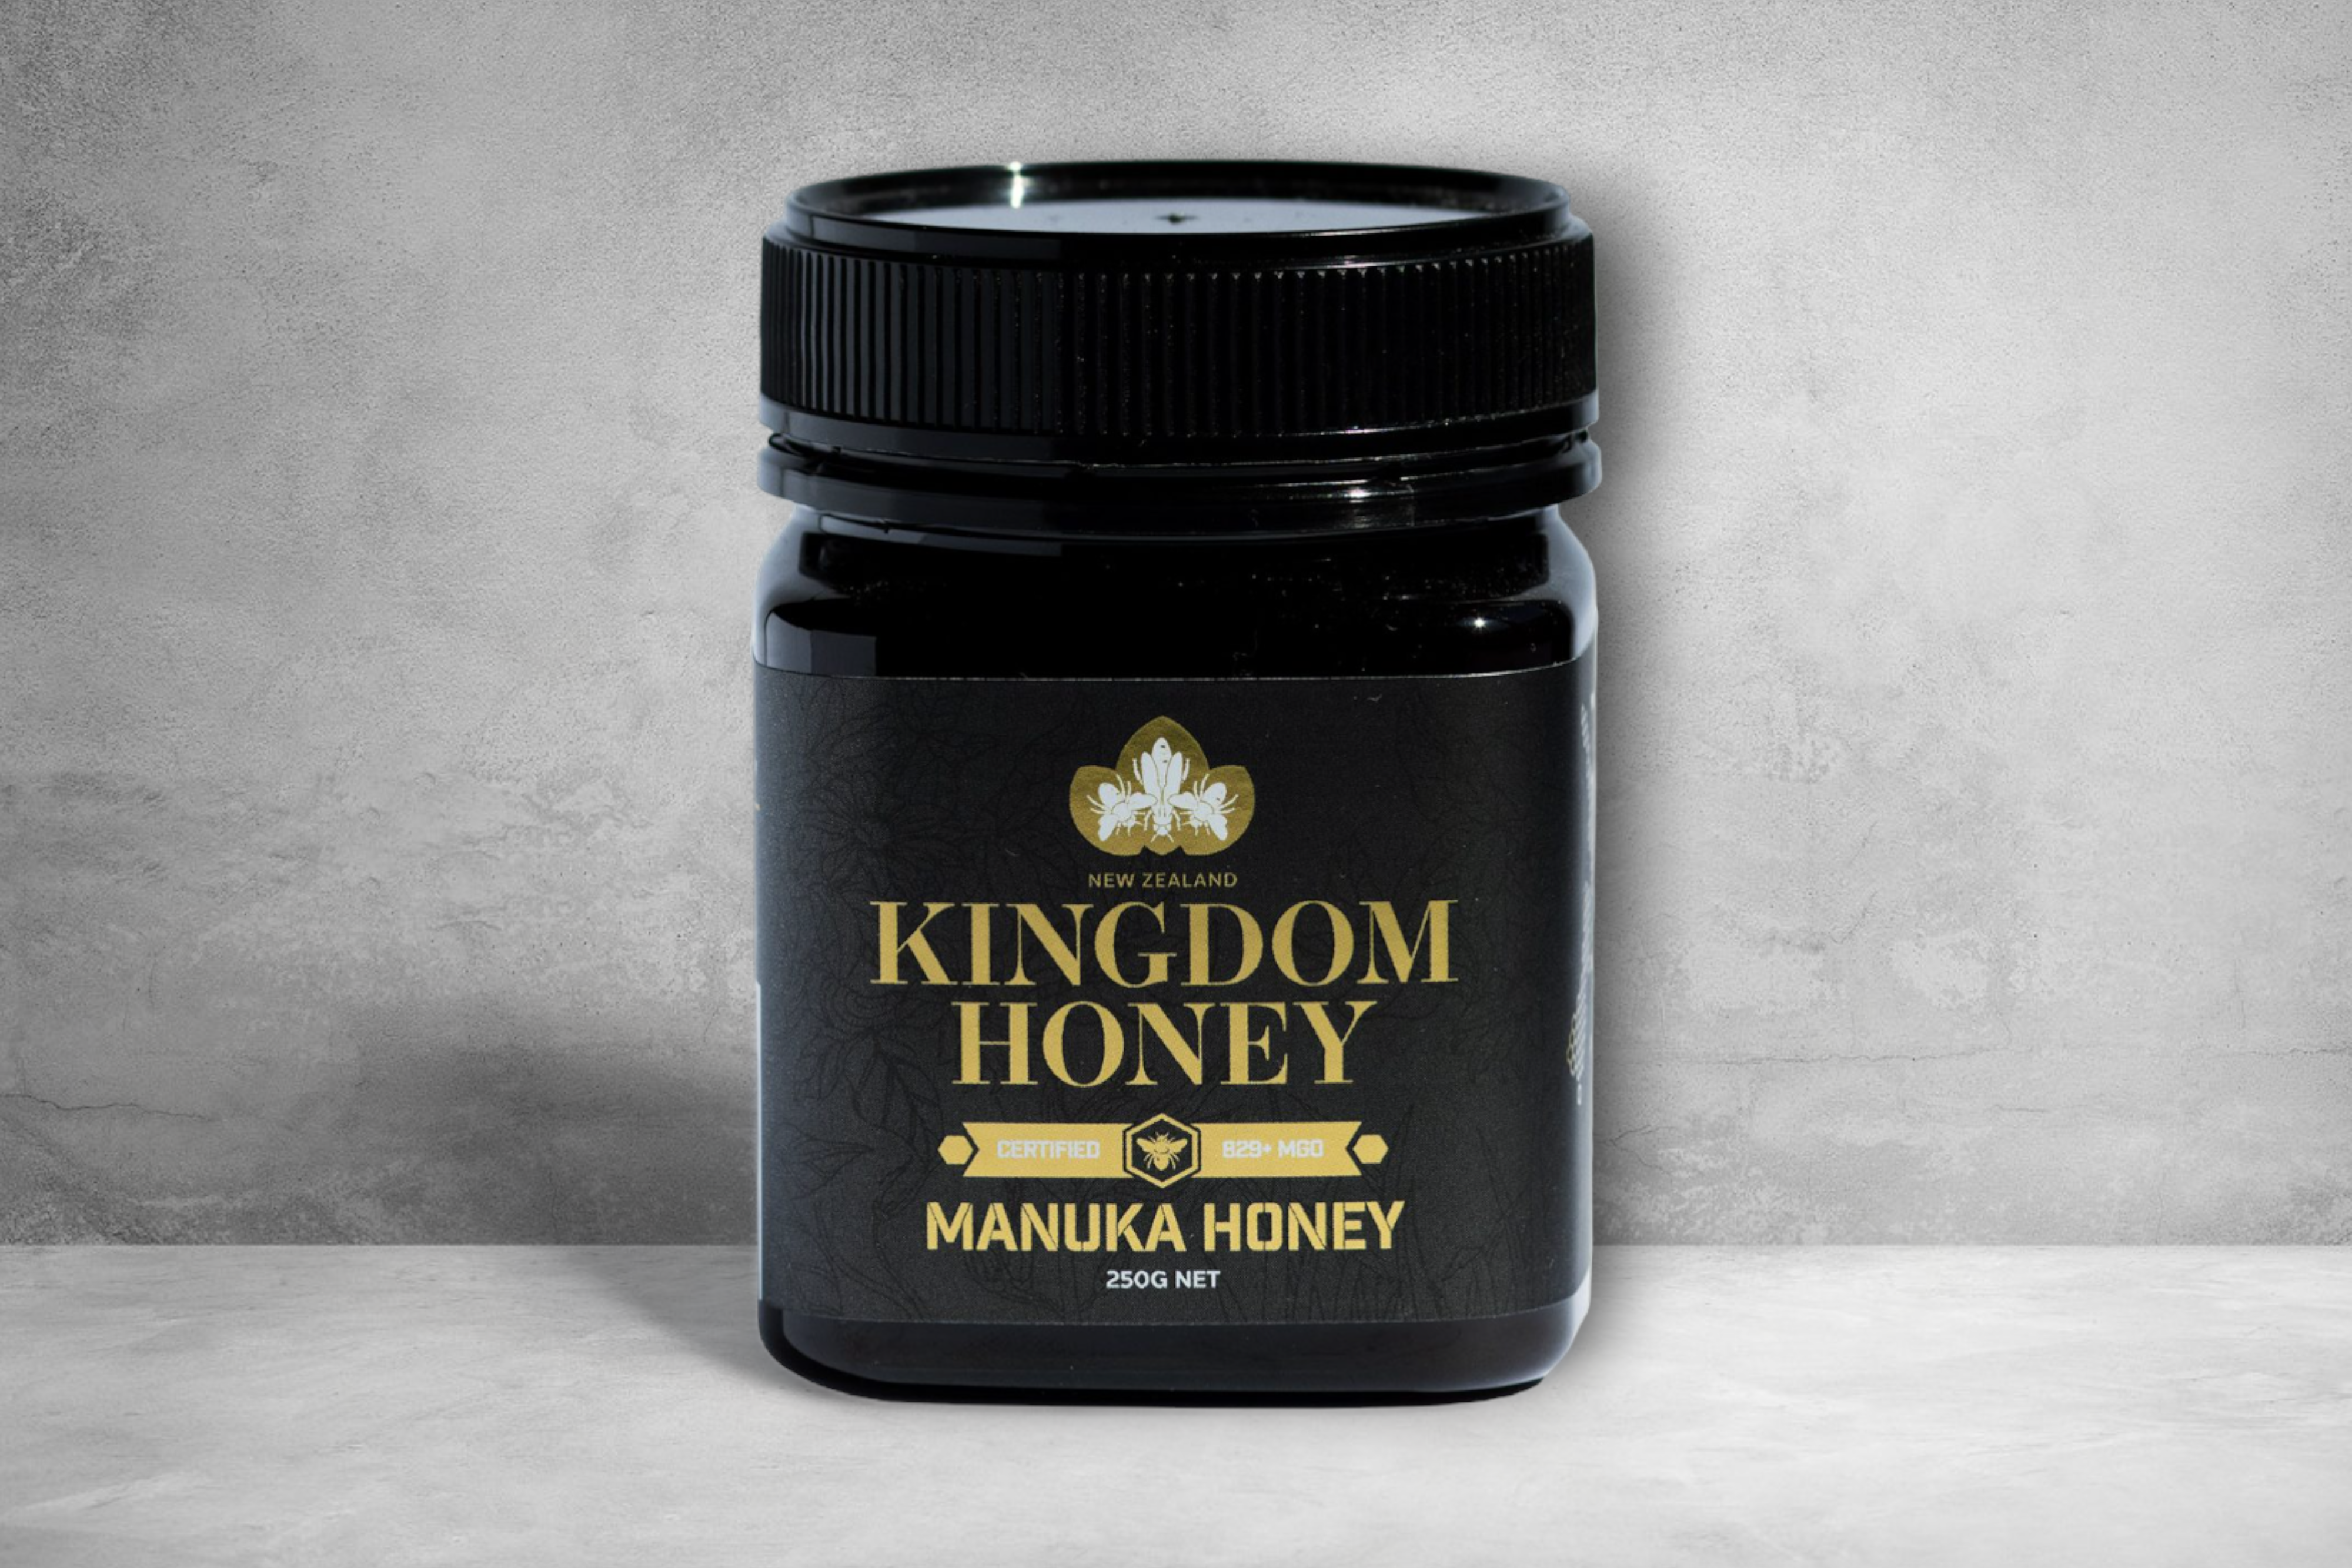 Kingdom Honey manuka honey